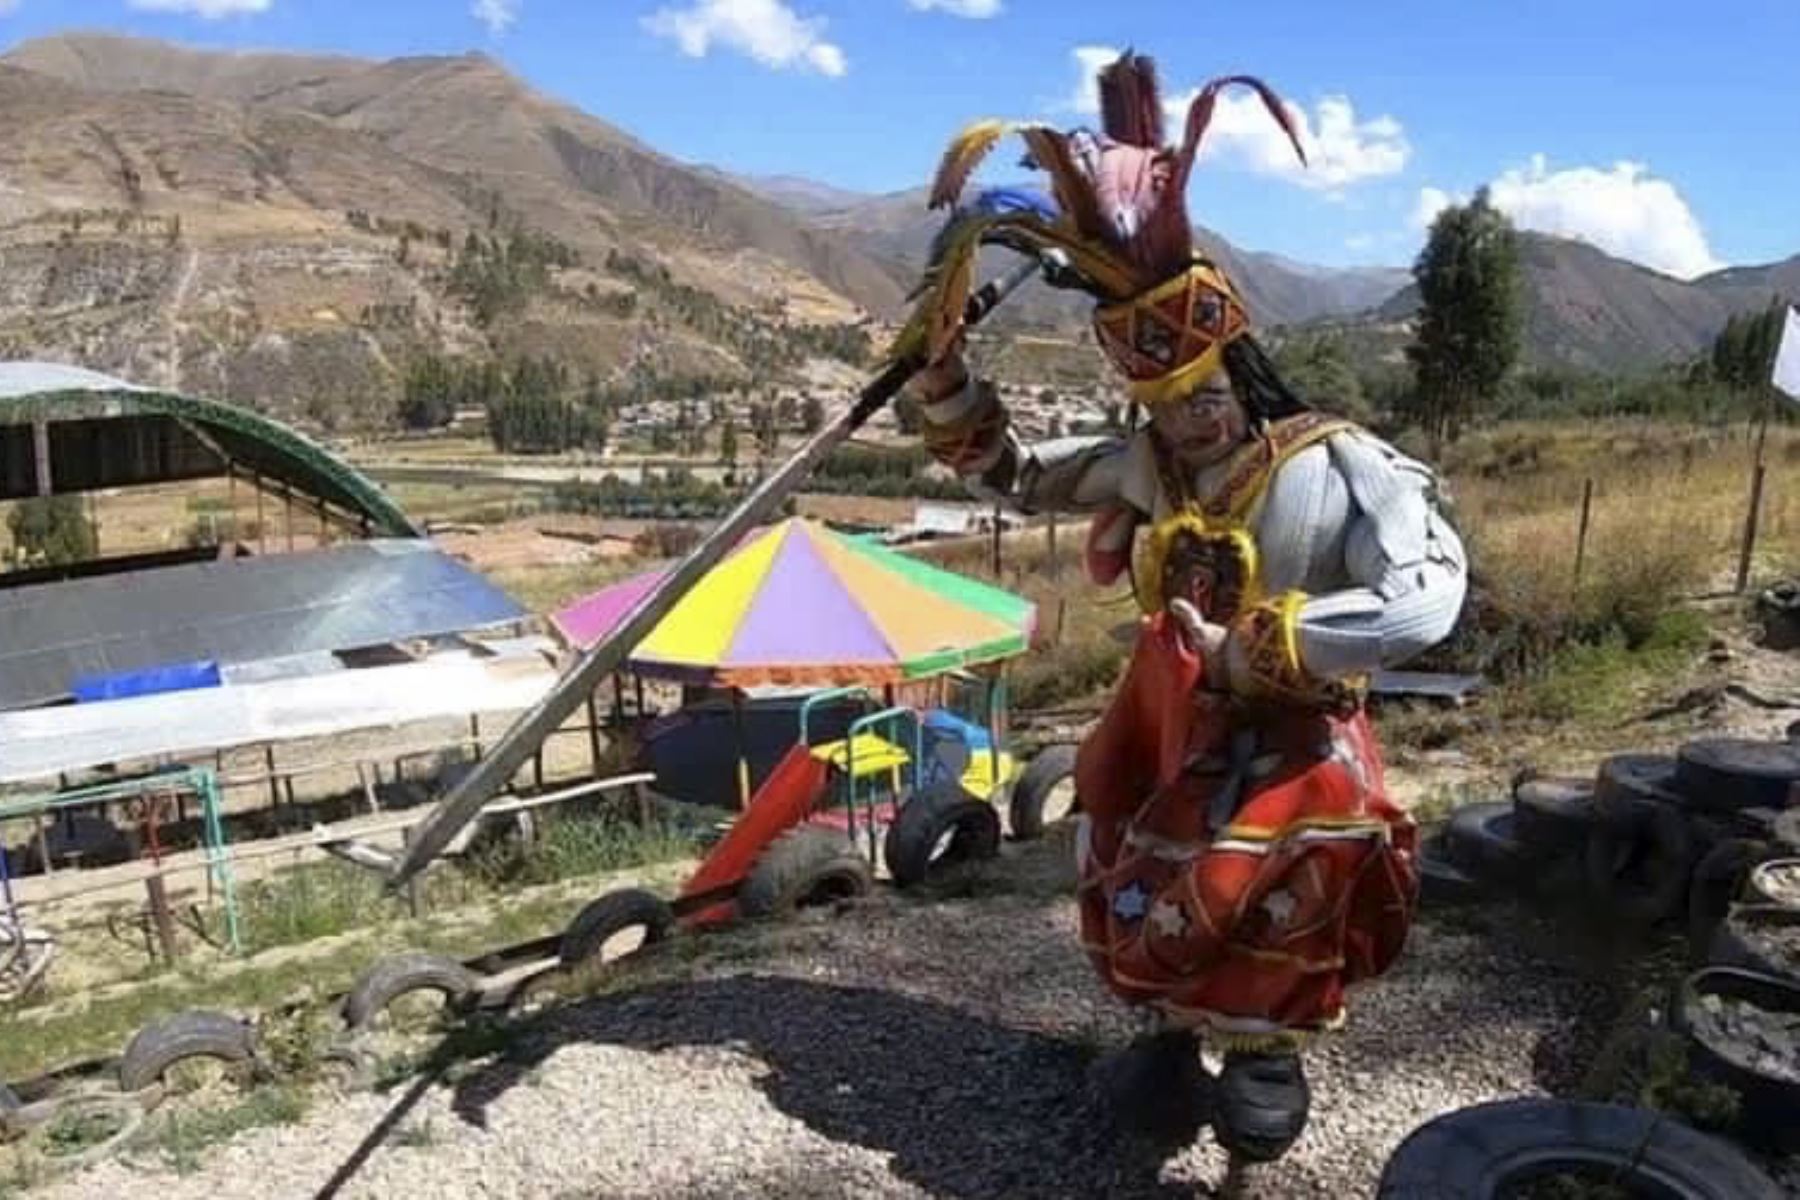 Reciclaje y diversión: parque temático Chimparuna, el nuevo atractivo turístico del Cusco